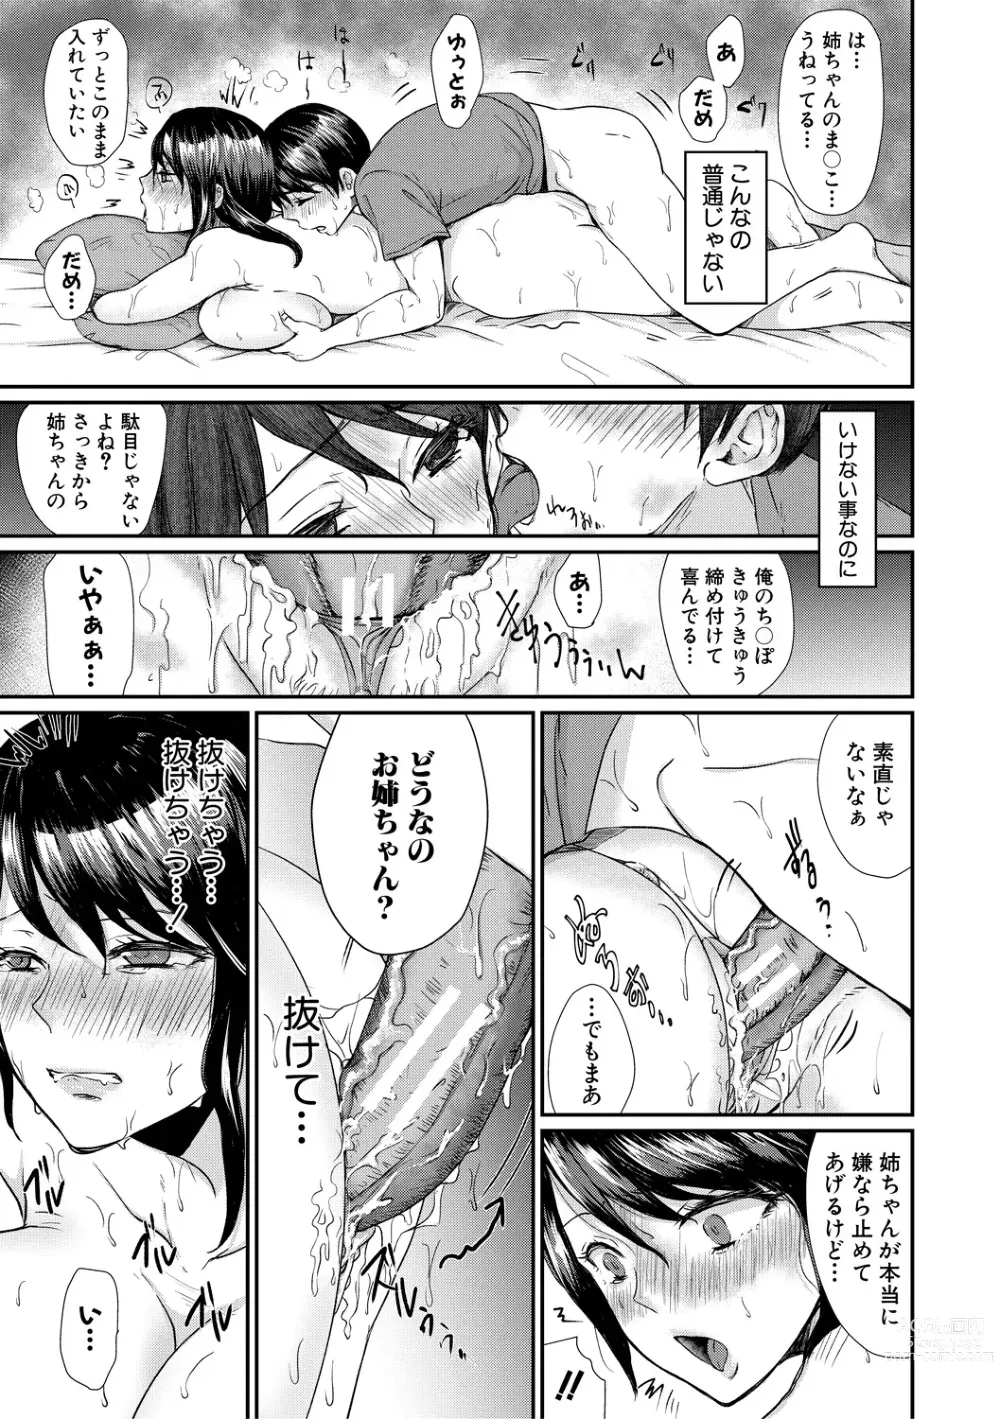 Page 173 of manga Shiborikiri Ane Body